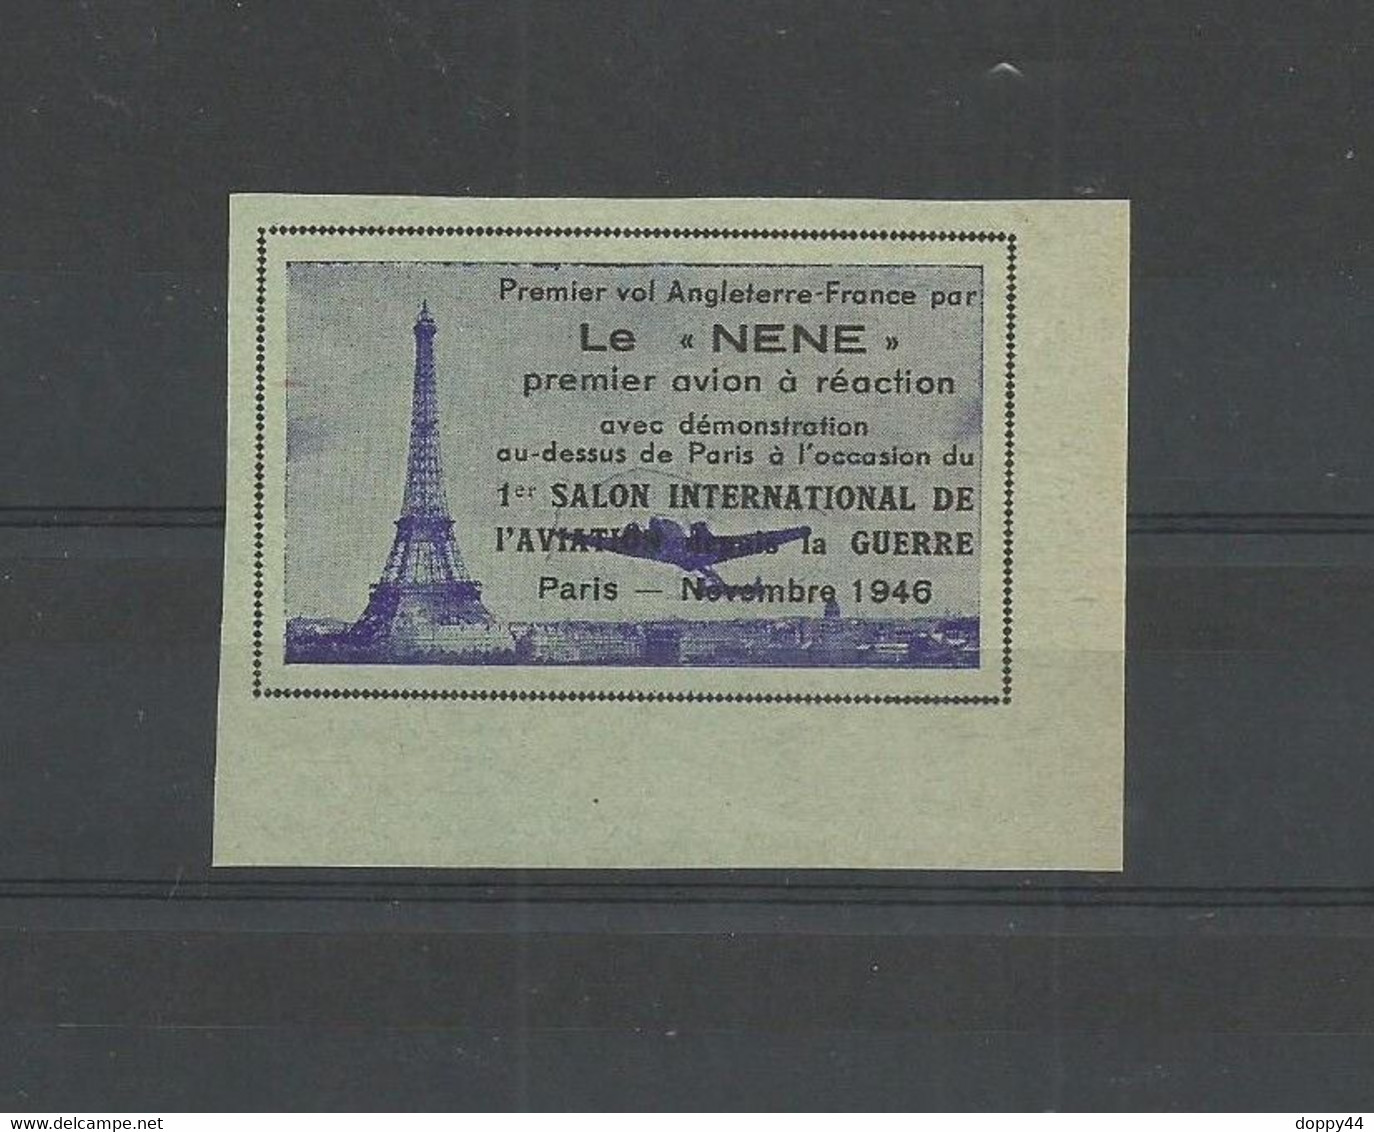 VIGNETTE AVIATION PREMIER VOL FRANCE ANGLETERRE PAR LE "NENE" A L'OCCASION DU SALON PARIS NOVEMBRE 1945. - Aviación